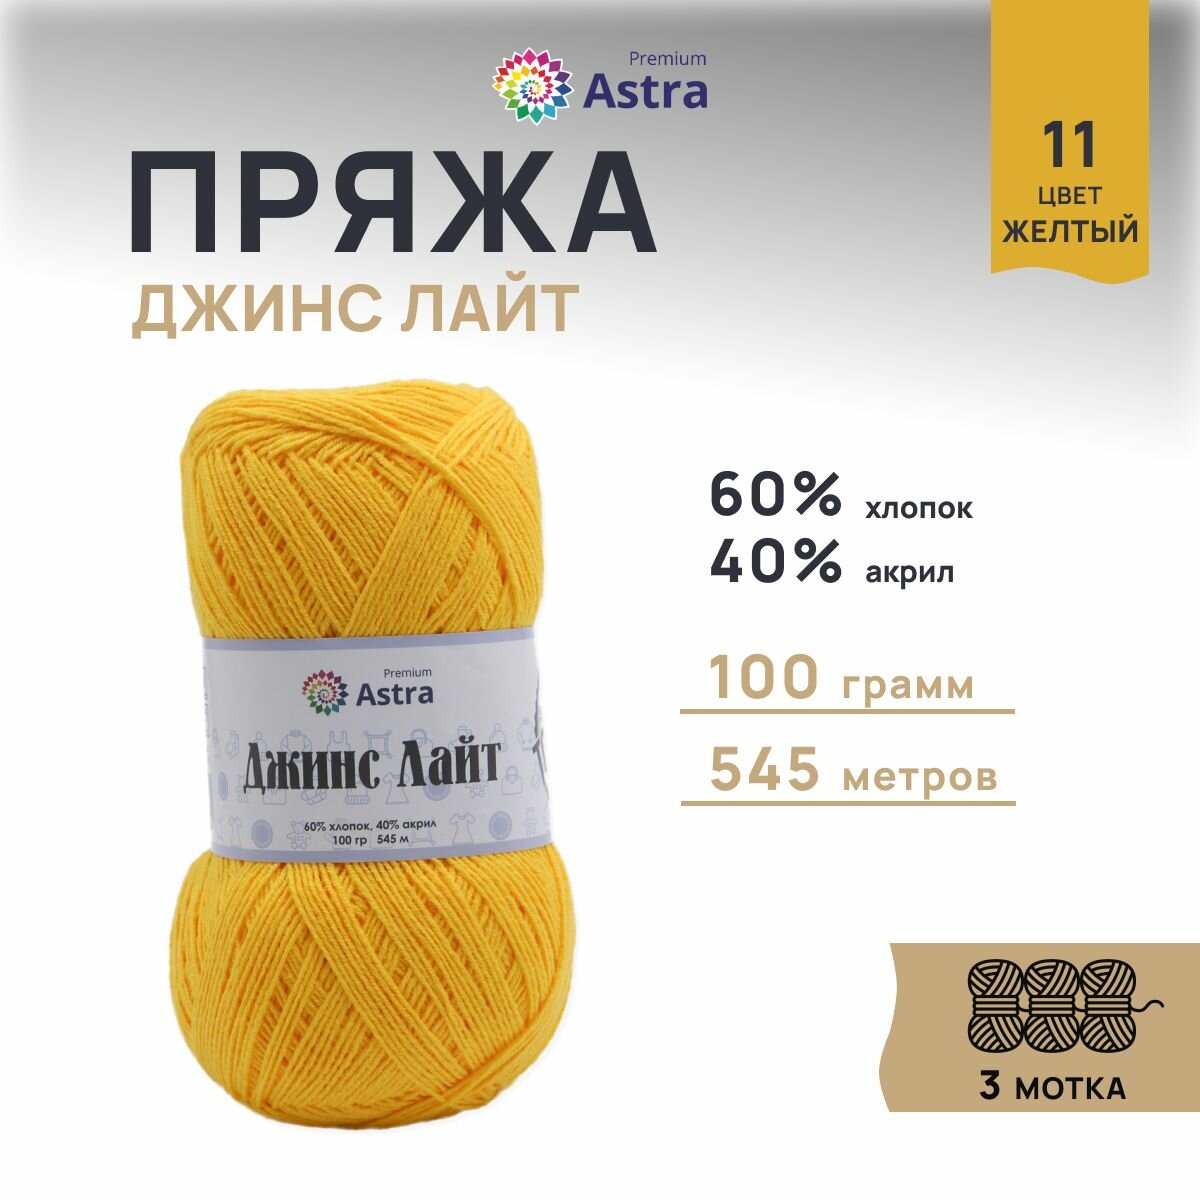 Пряжа для вязания Astra Premium 'Джинс Лайт' (Jeans Light), 100г, 545м (60% хлопок, 40% акрил) (11 жёлтый), 3 мотка